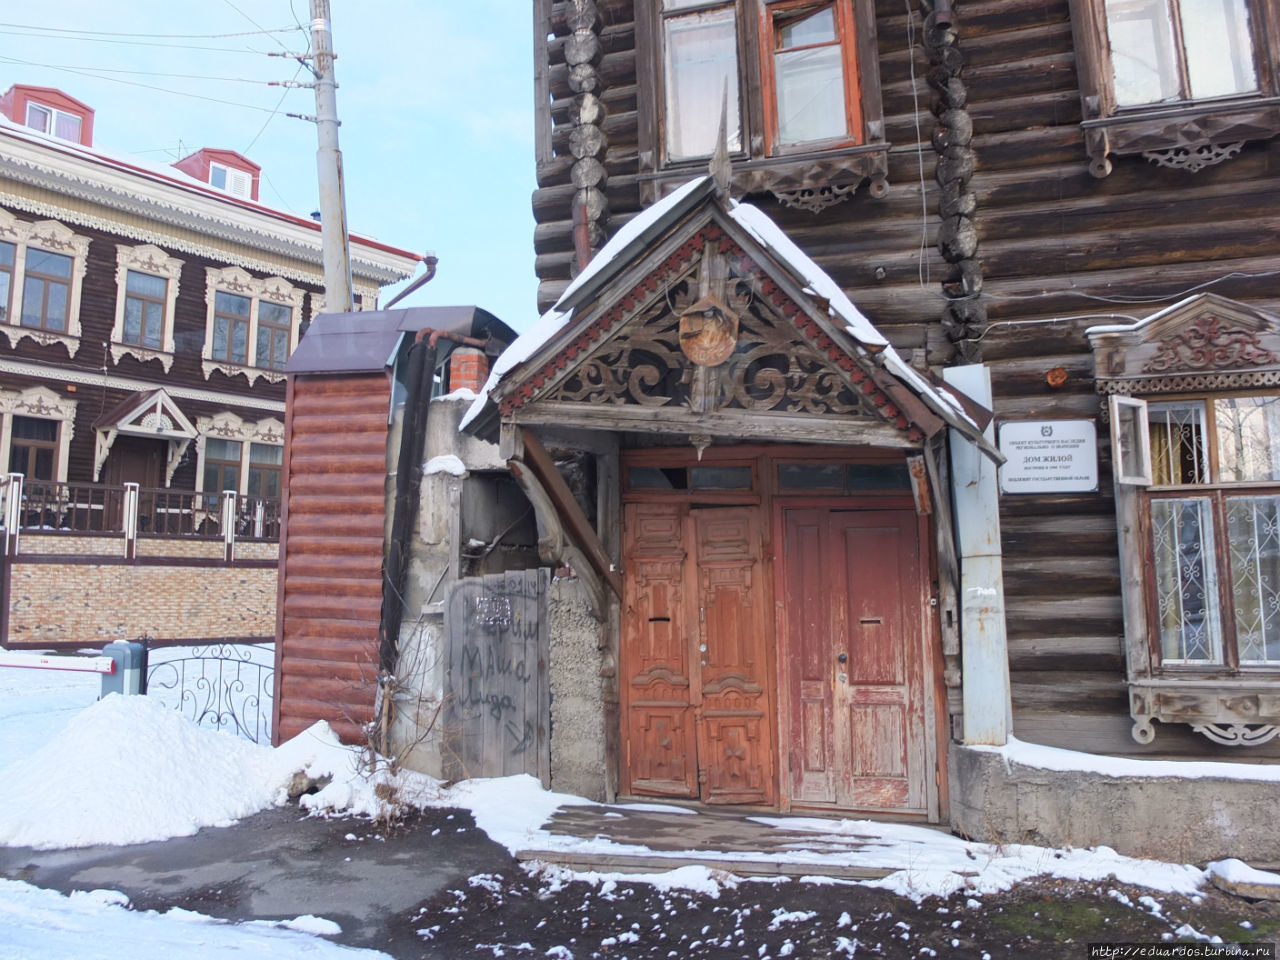 Ещё немного деревянного зодчества из славного города Томска